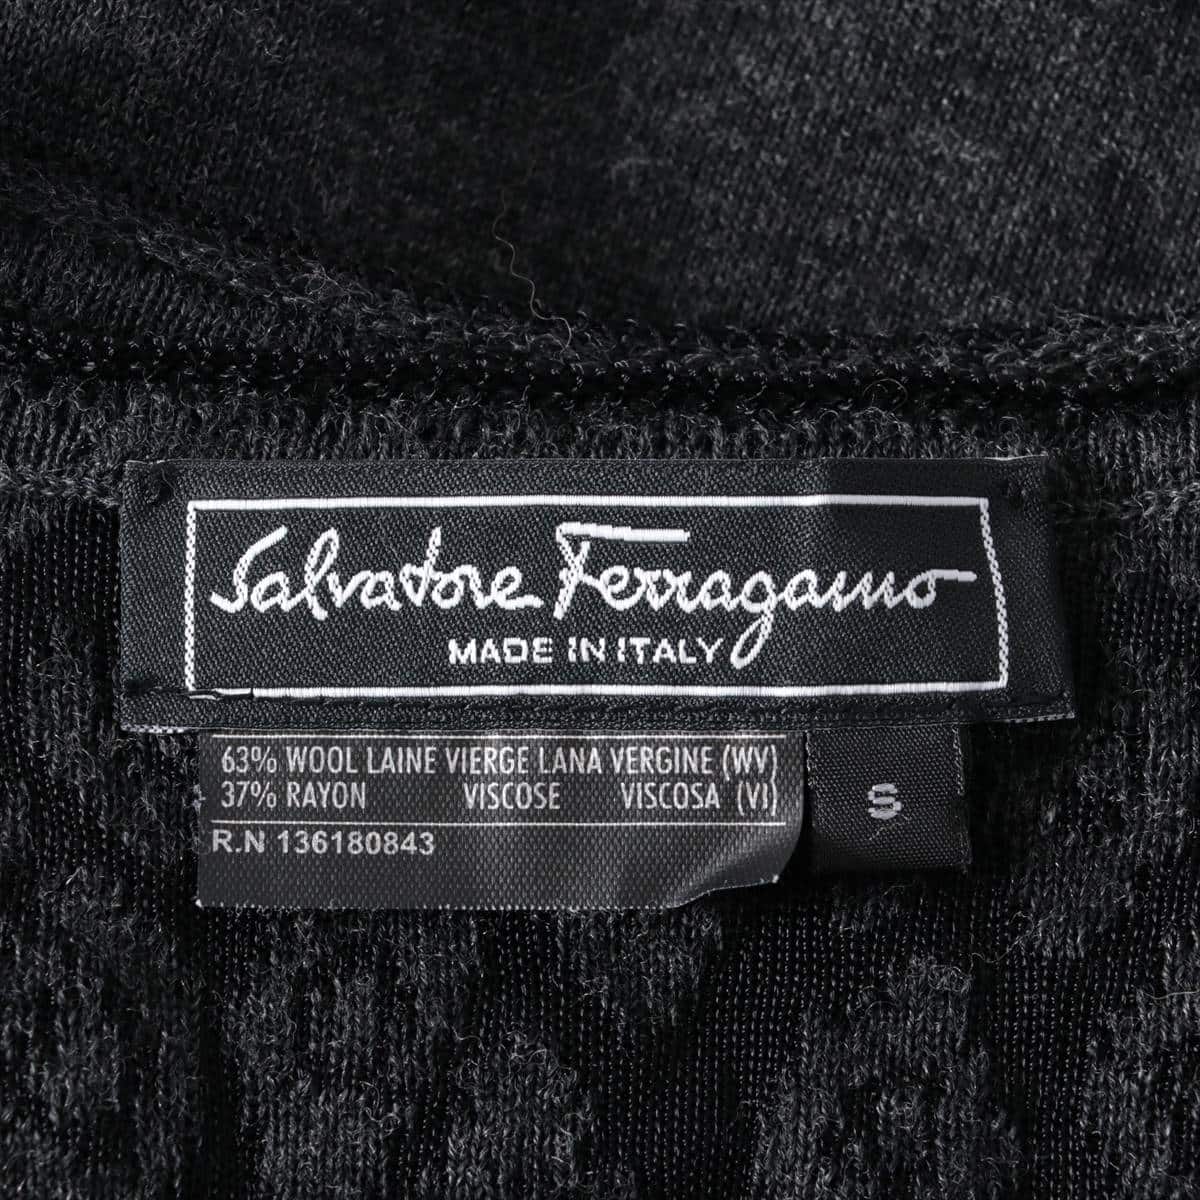 Ferragamo Wool Knit dress S Ladies' Black